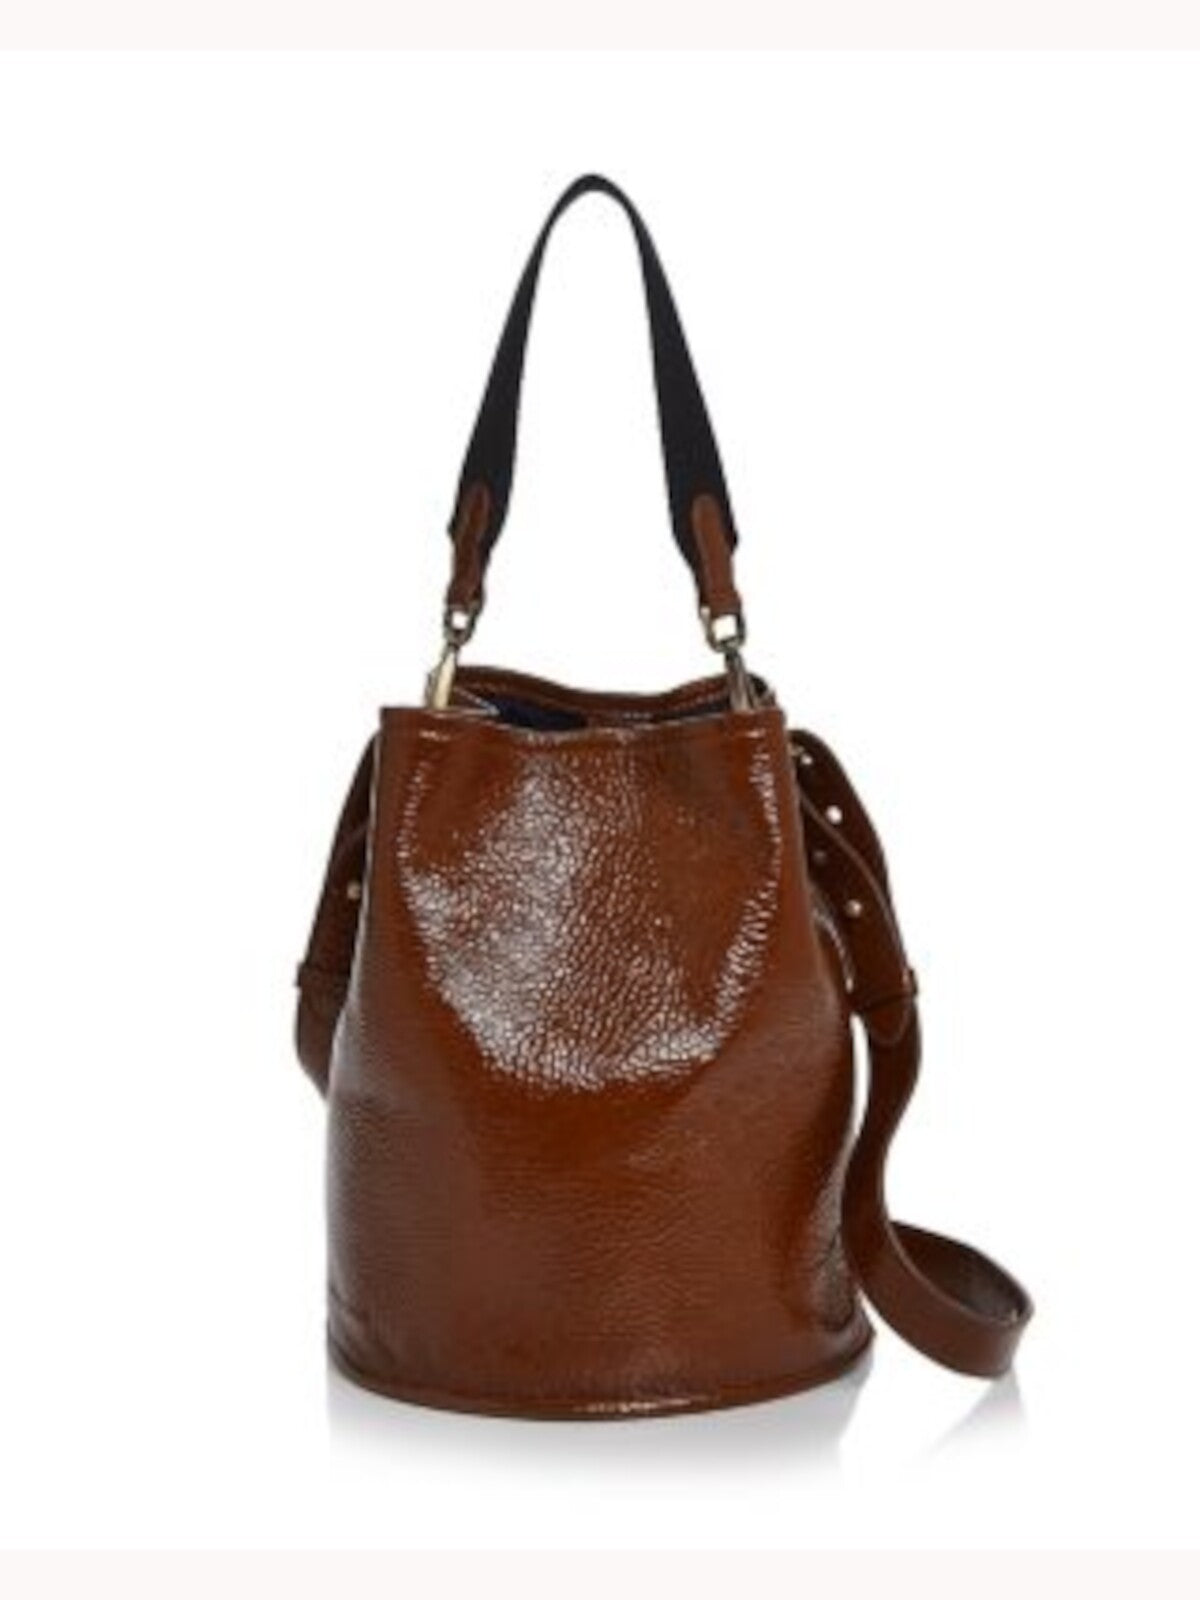 CREATURES OF COMFORT Women's Brown Leather Adjustable Strap Bucket Bag